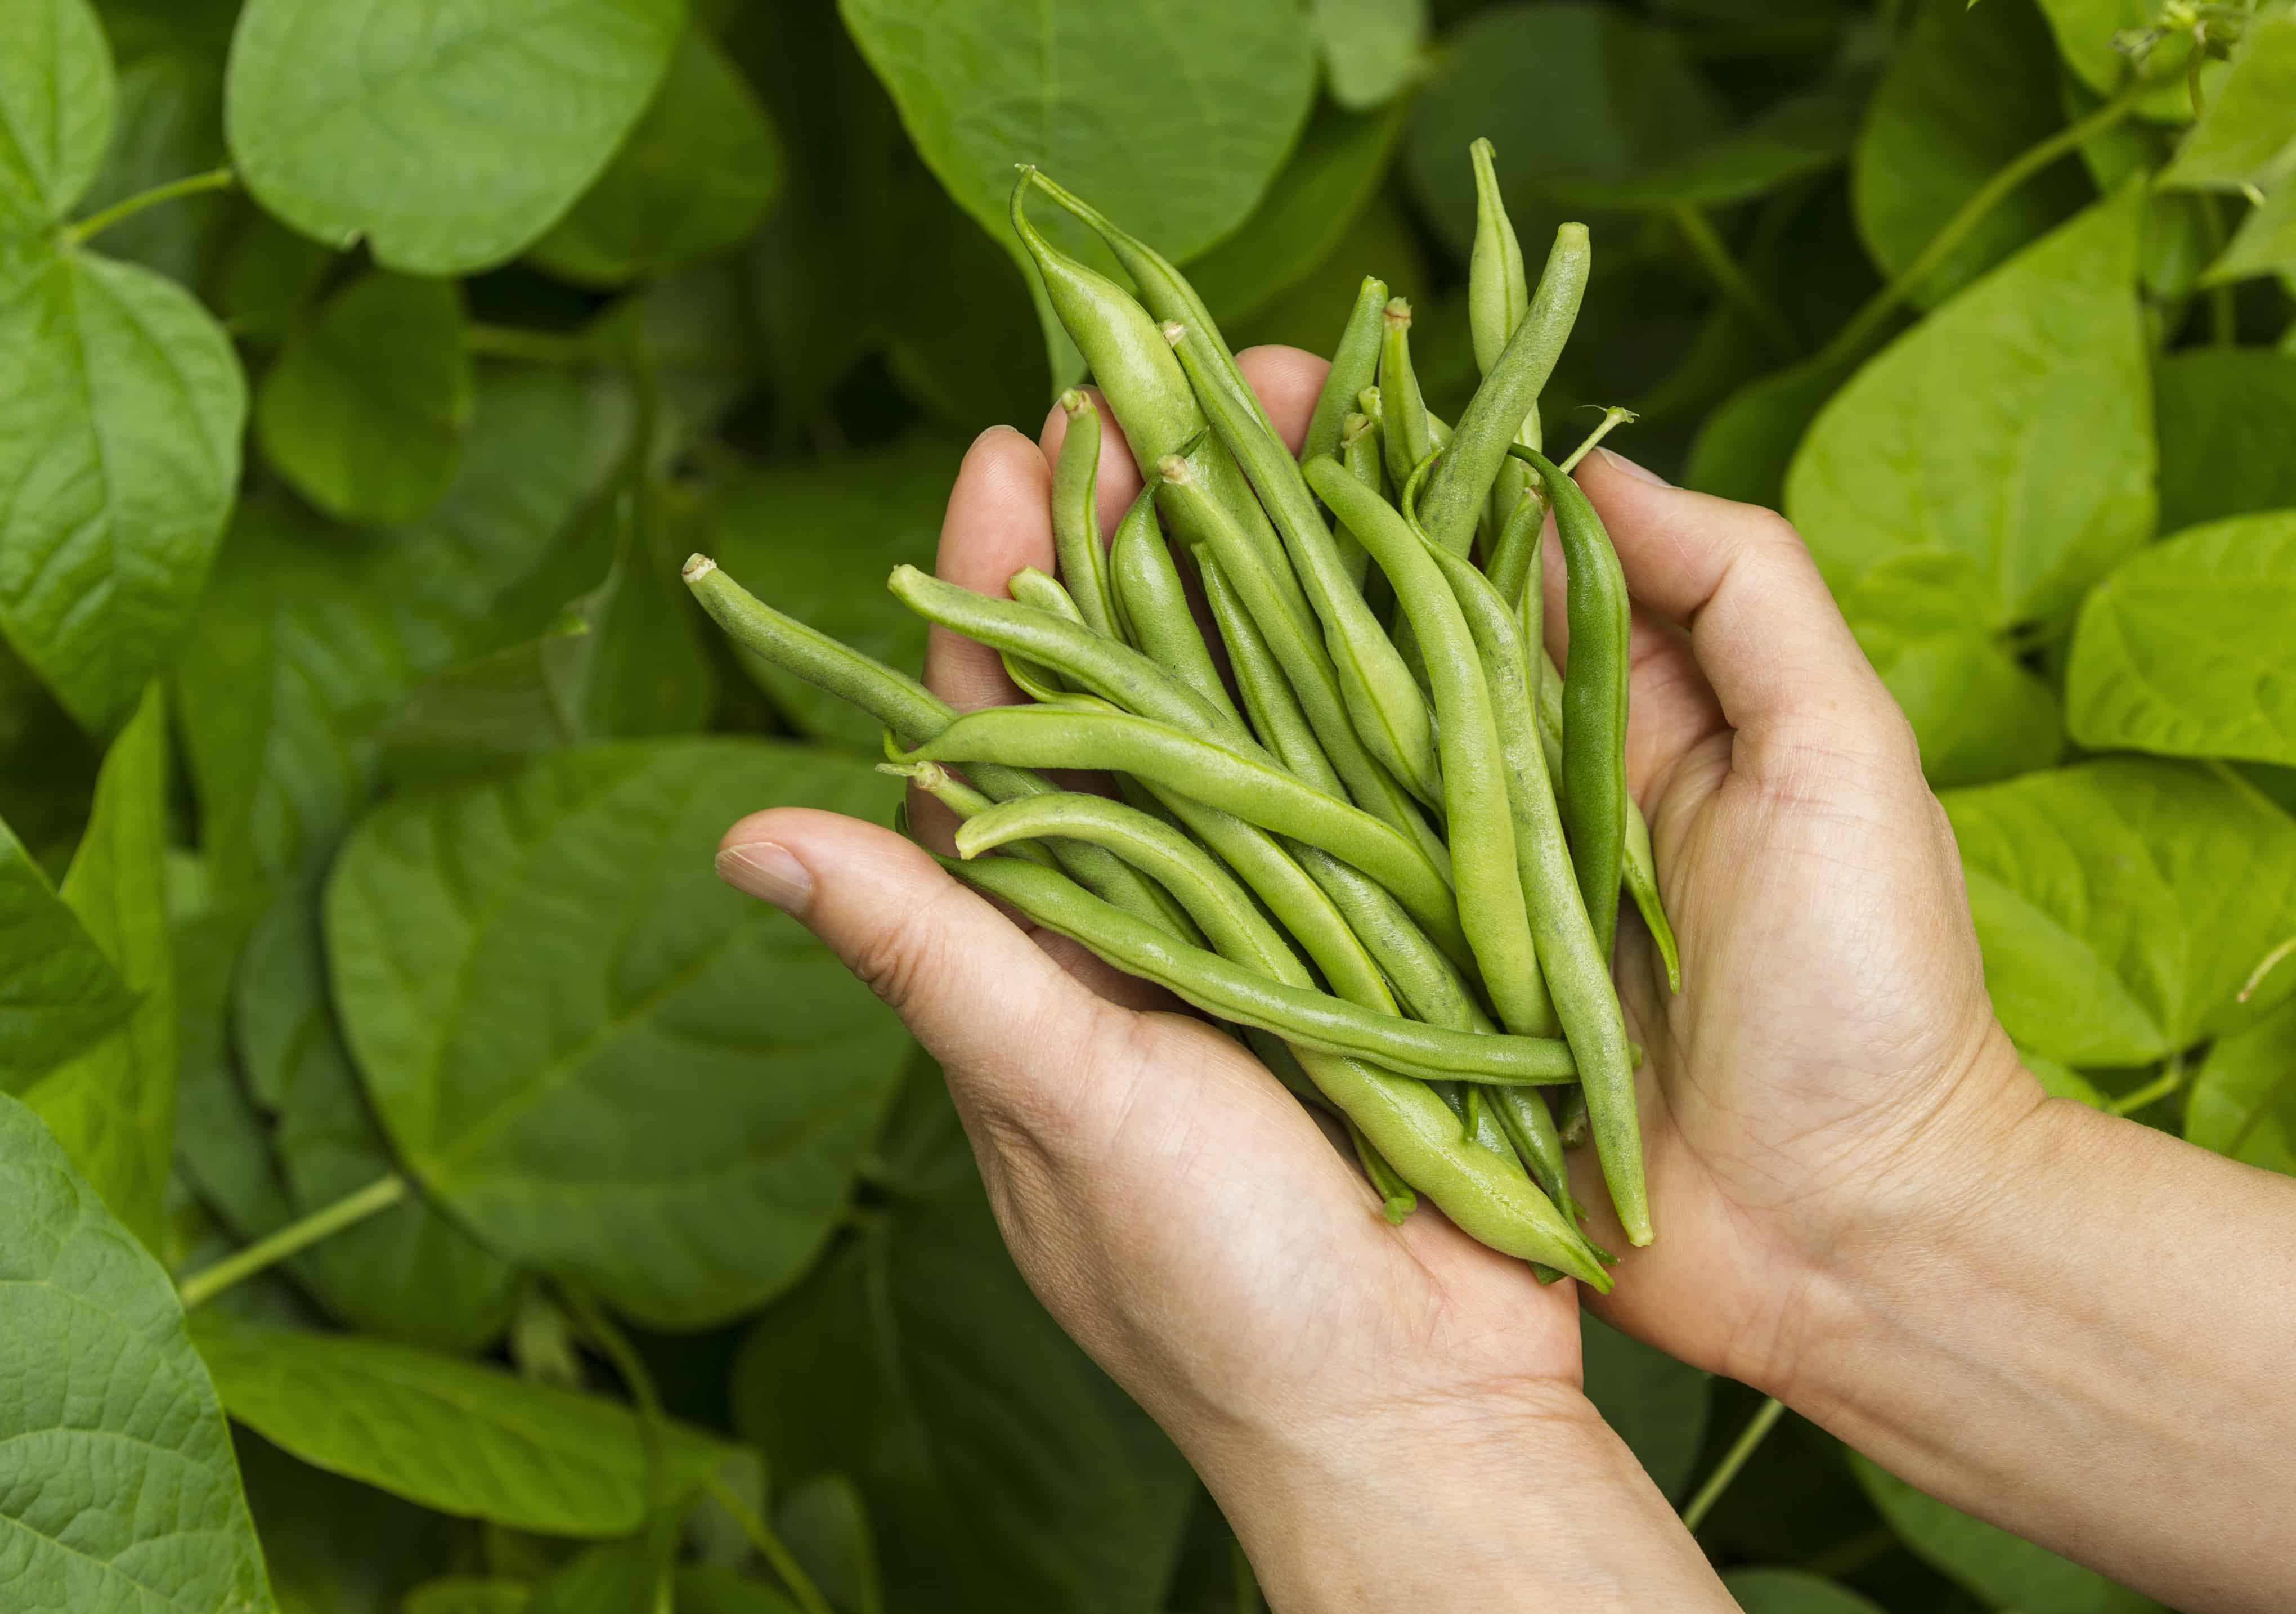 Hands holding fresh green beans